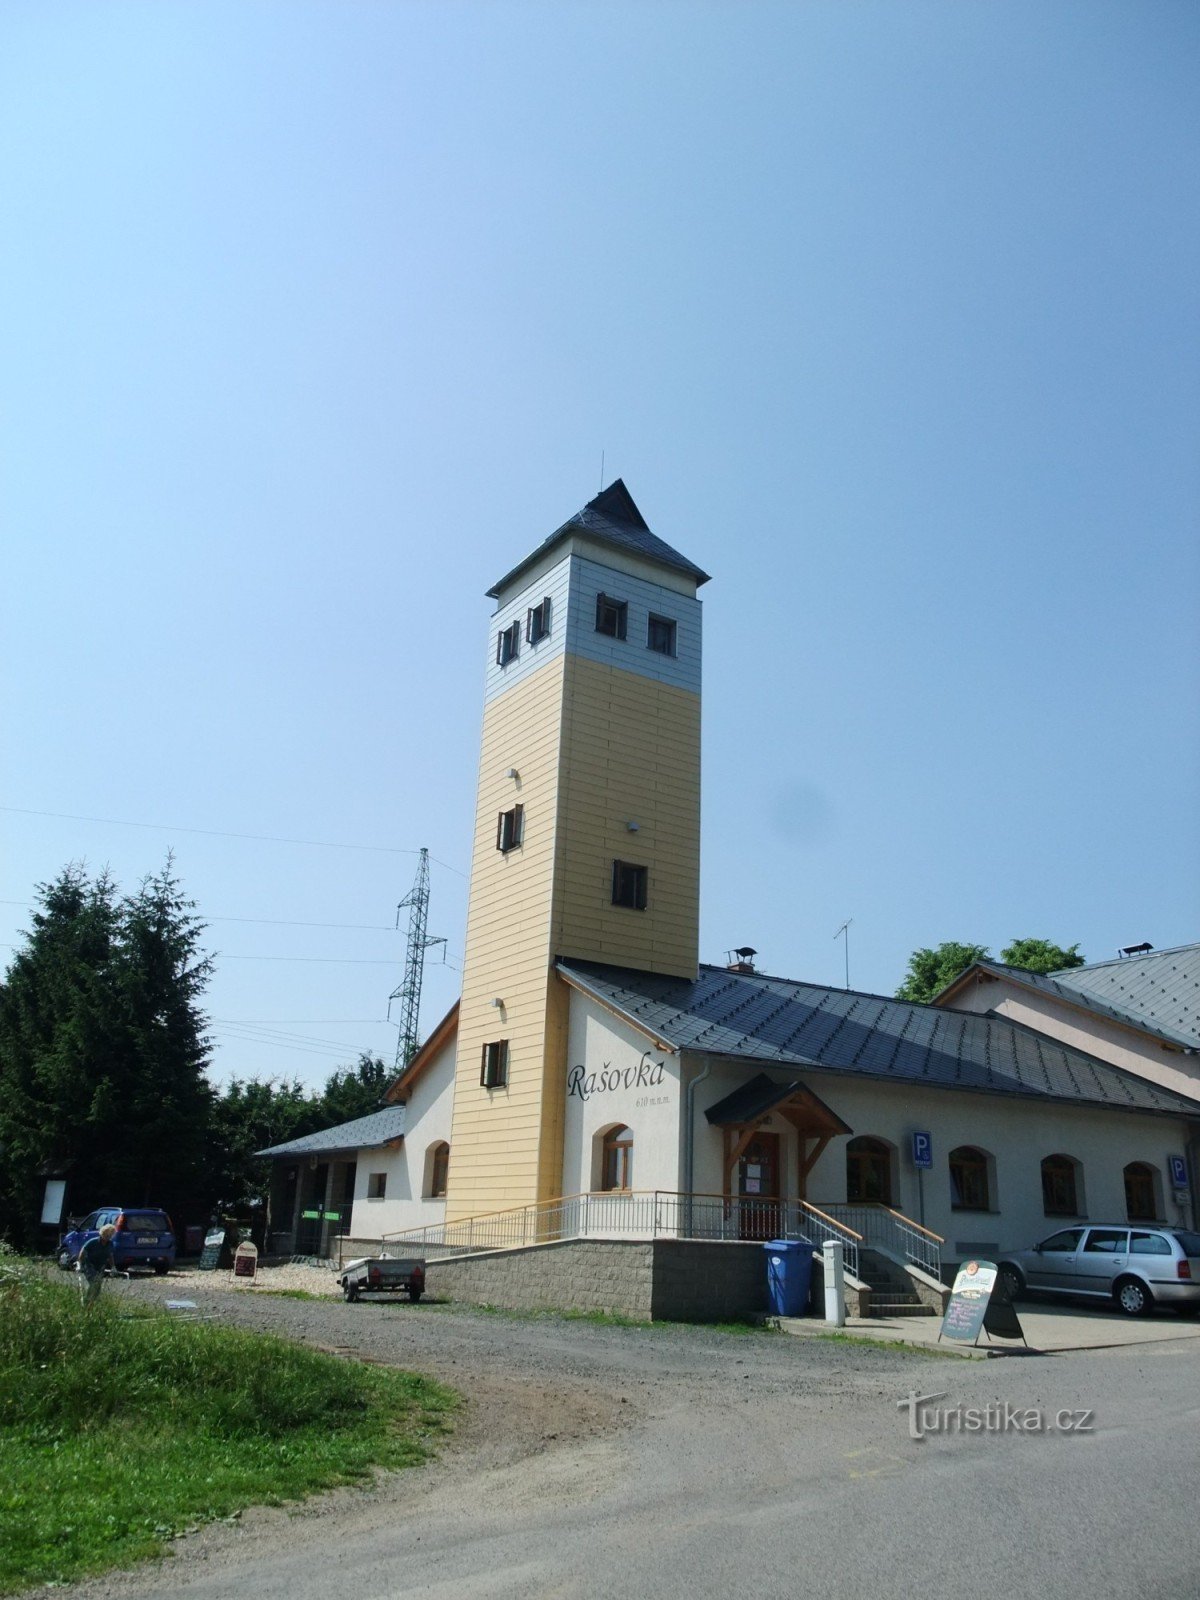 Torre de observación Rašovka